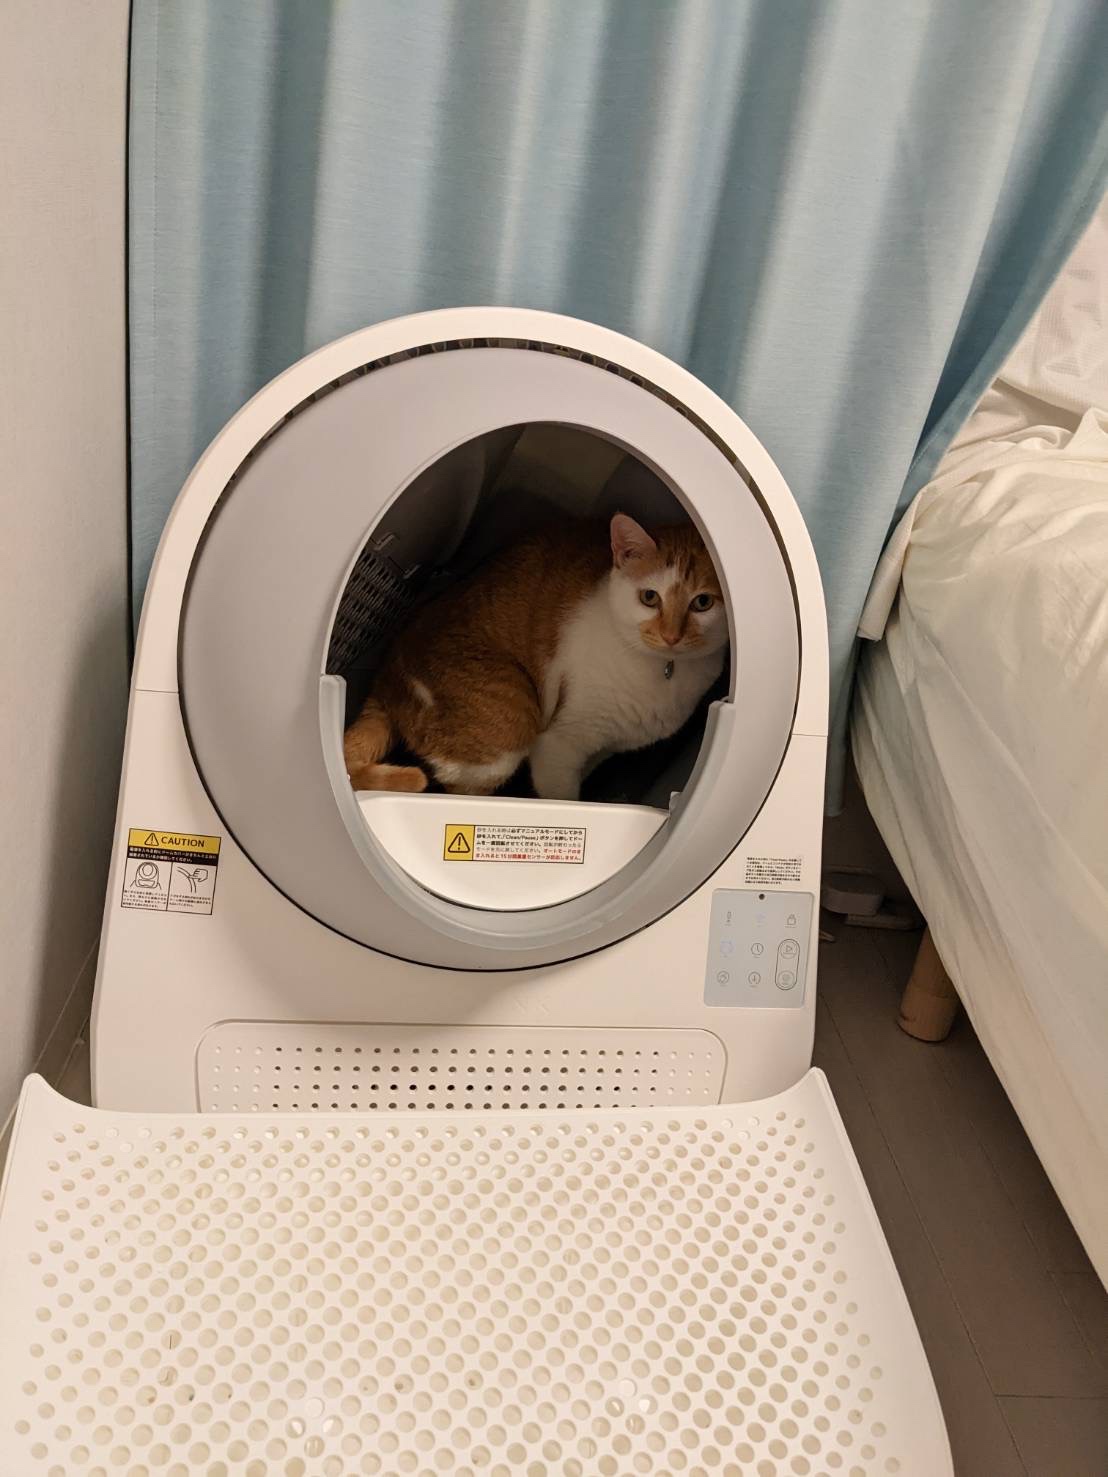 人気色 CATLINK SCOOPER　自動猫トイレ【クレアさん専用】 猫用品